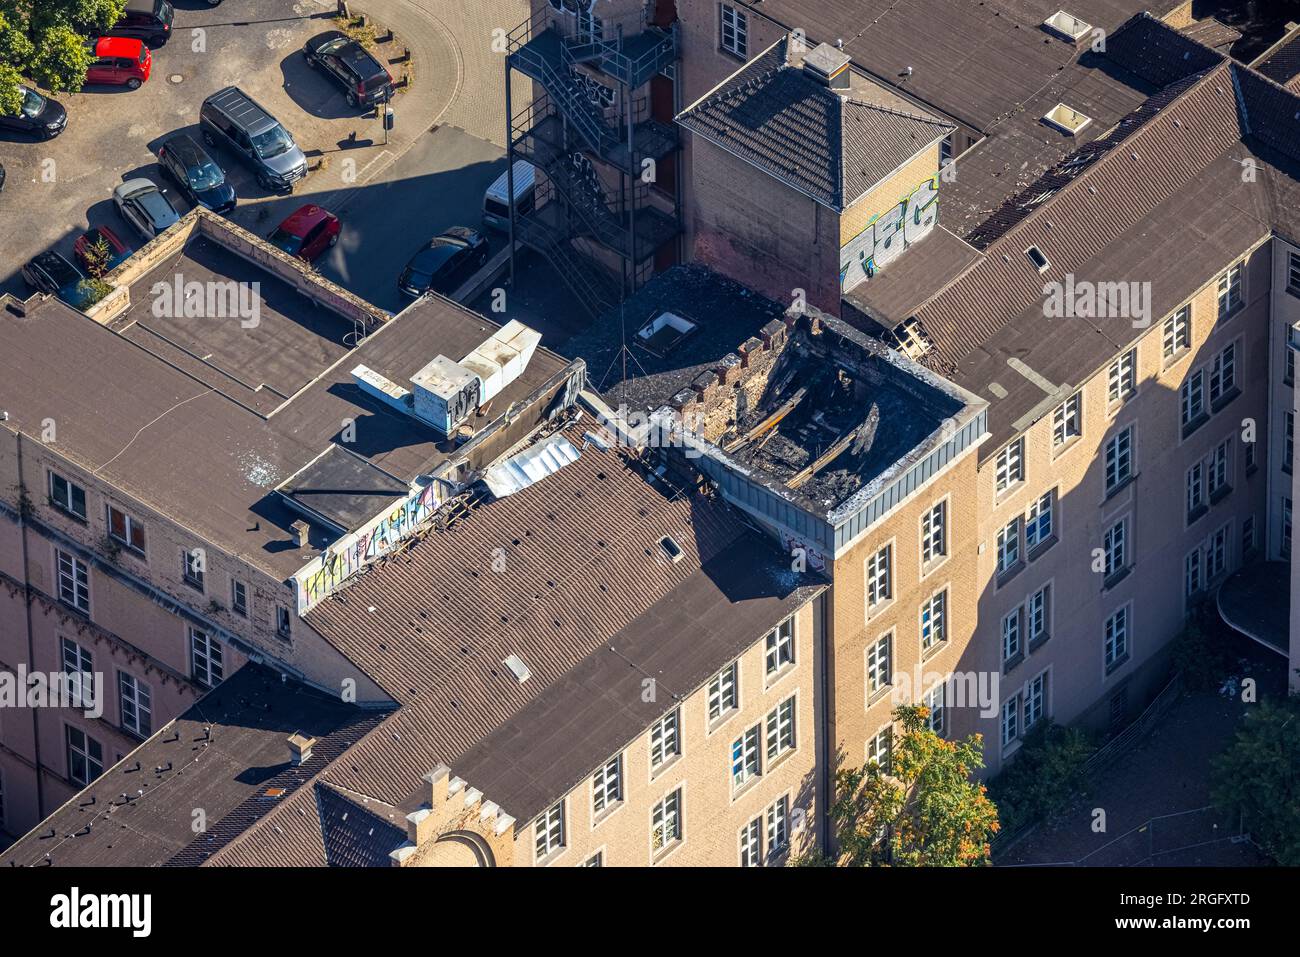 Luftbild, Dachstuhl Brand im ehemaligen St. Vincenz-Hospital, Dellviertel, Duisburg, Ruhrgebiet, Nordrhein-Westfalen, Deutschland Stock Photo